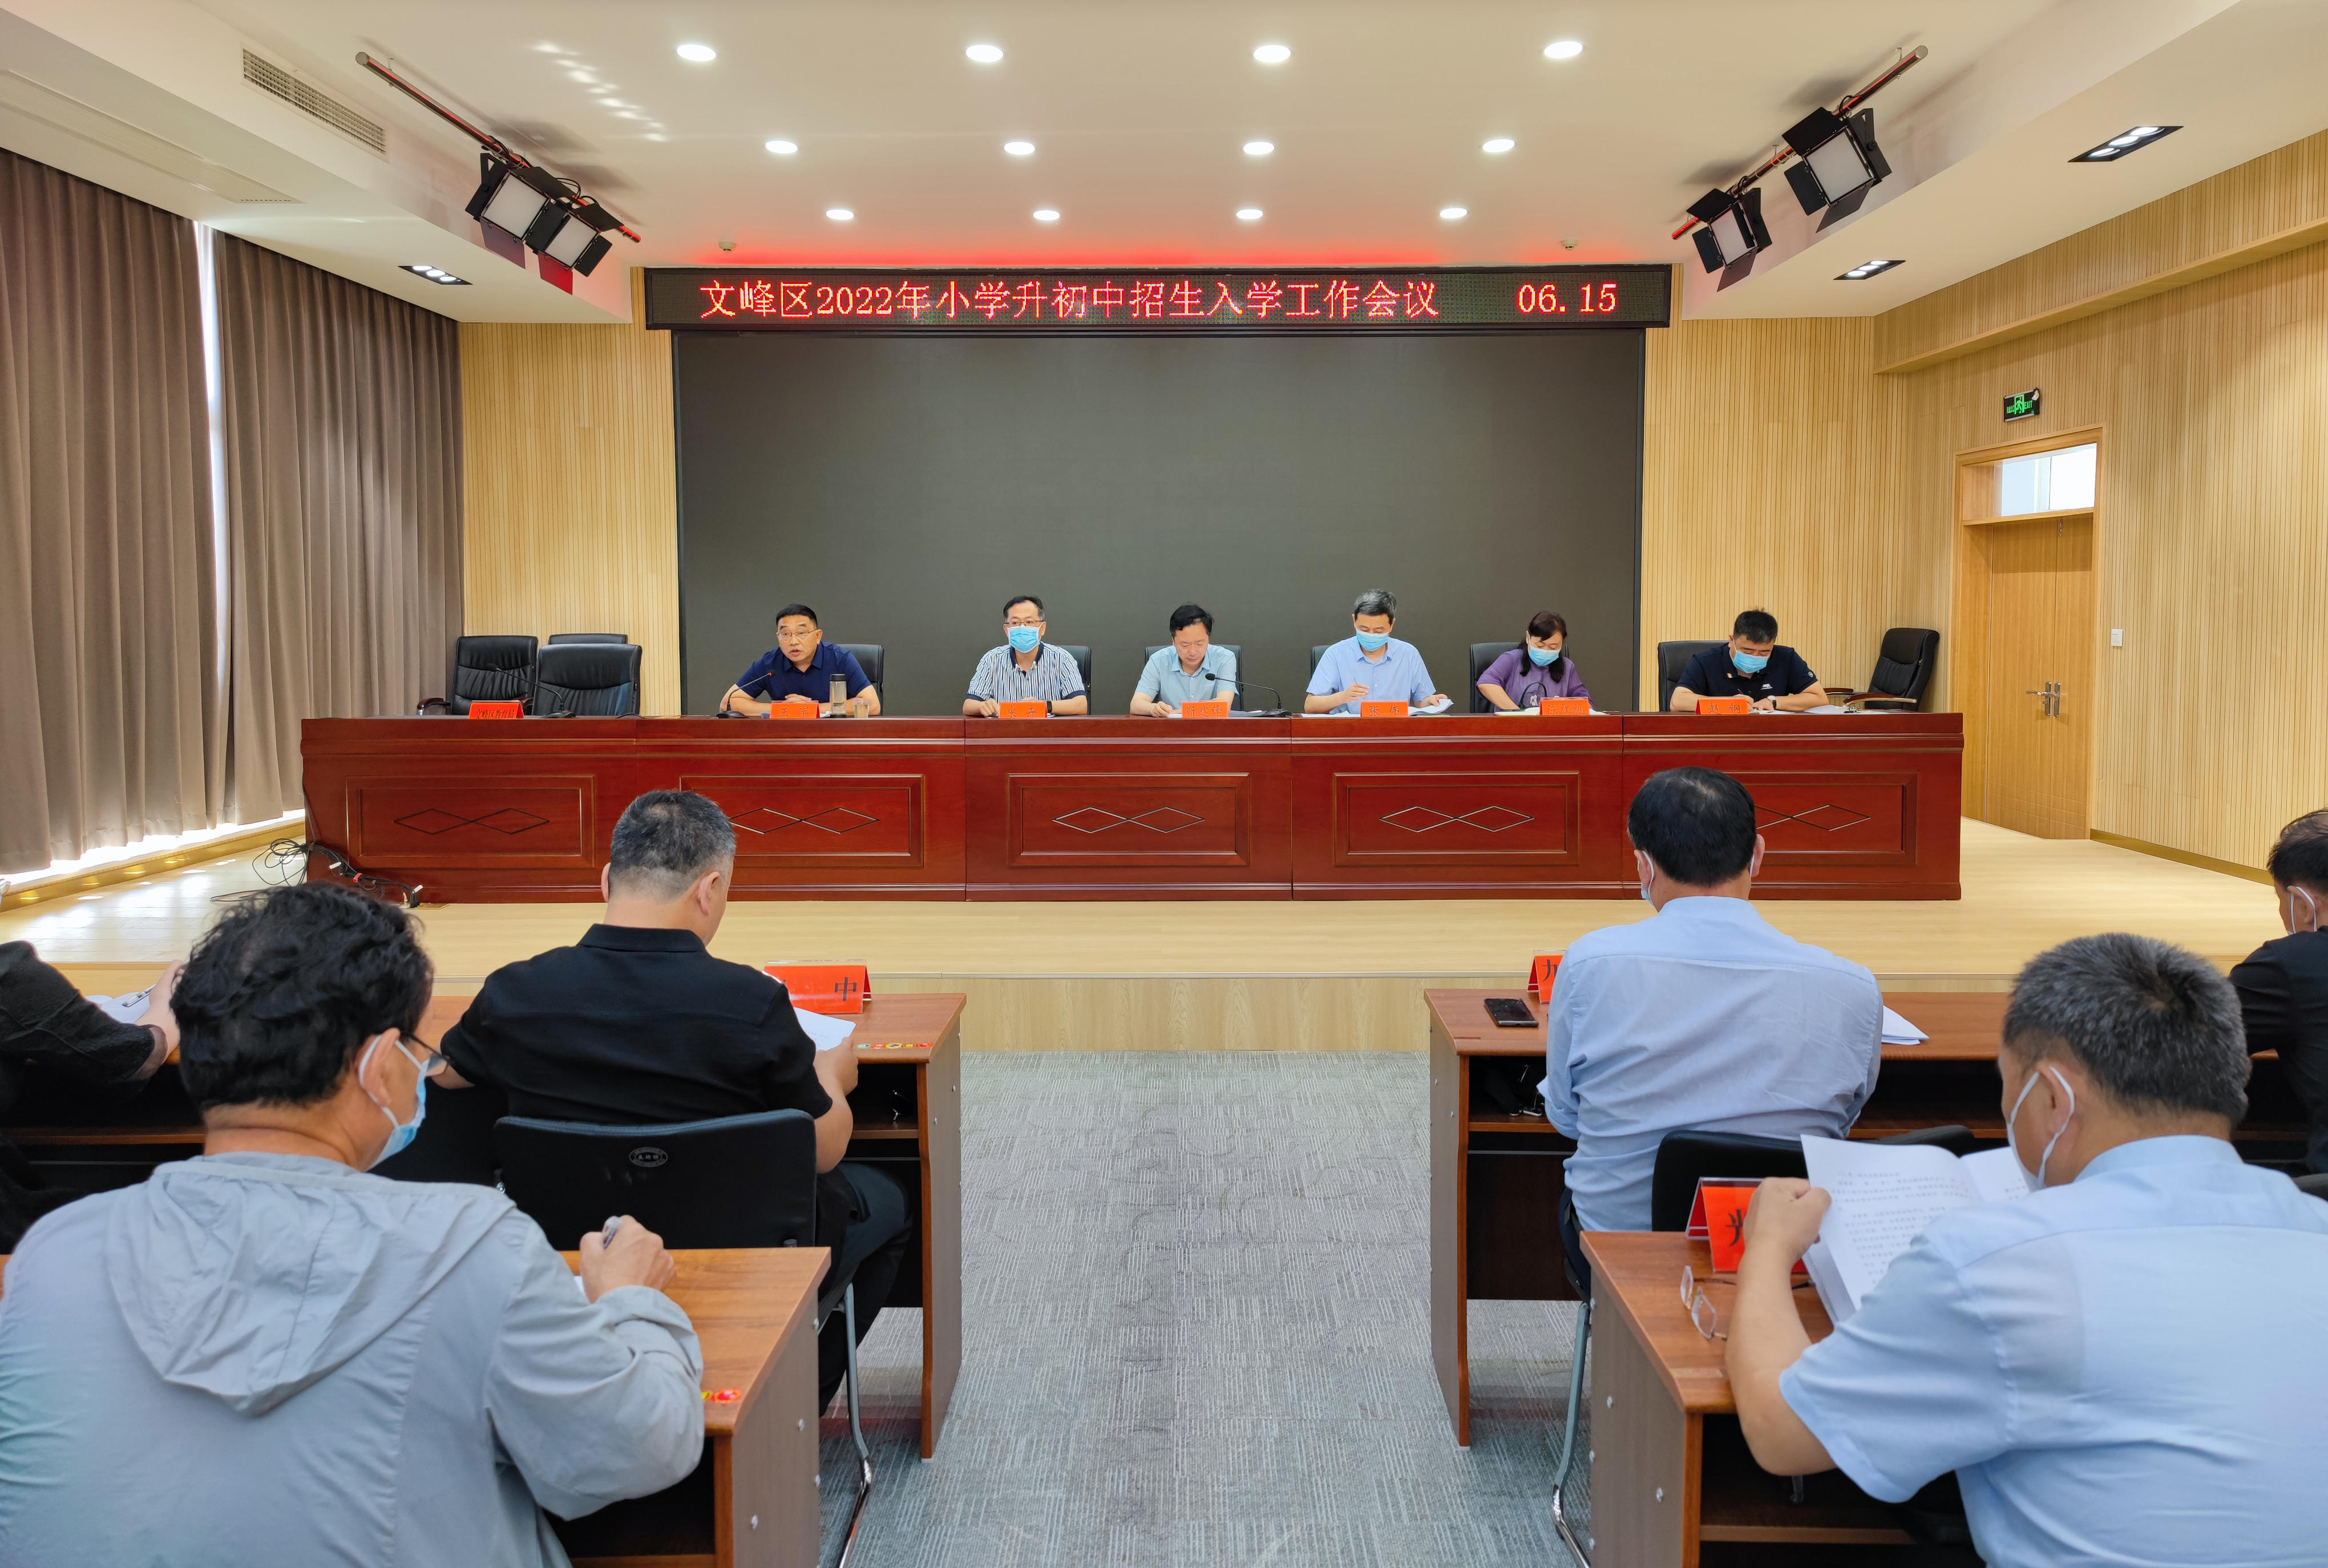 文峰区教育局召开2022年小学毕业生升初中入学工作会议